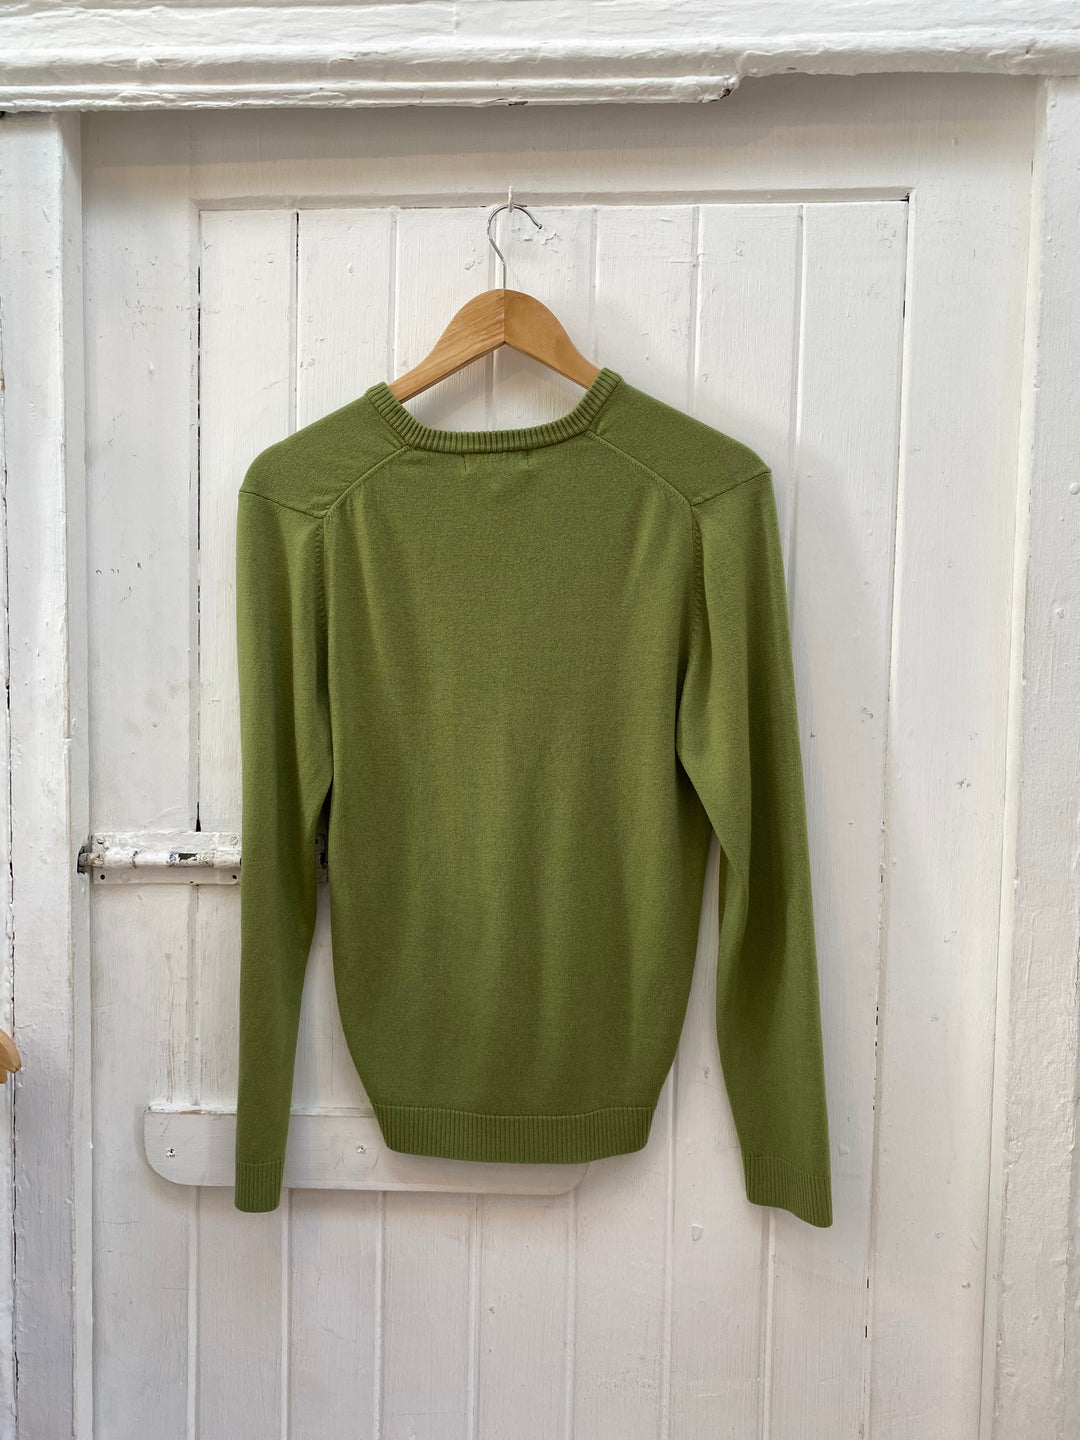 Green v-neck sweater